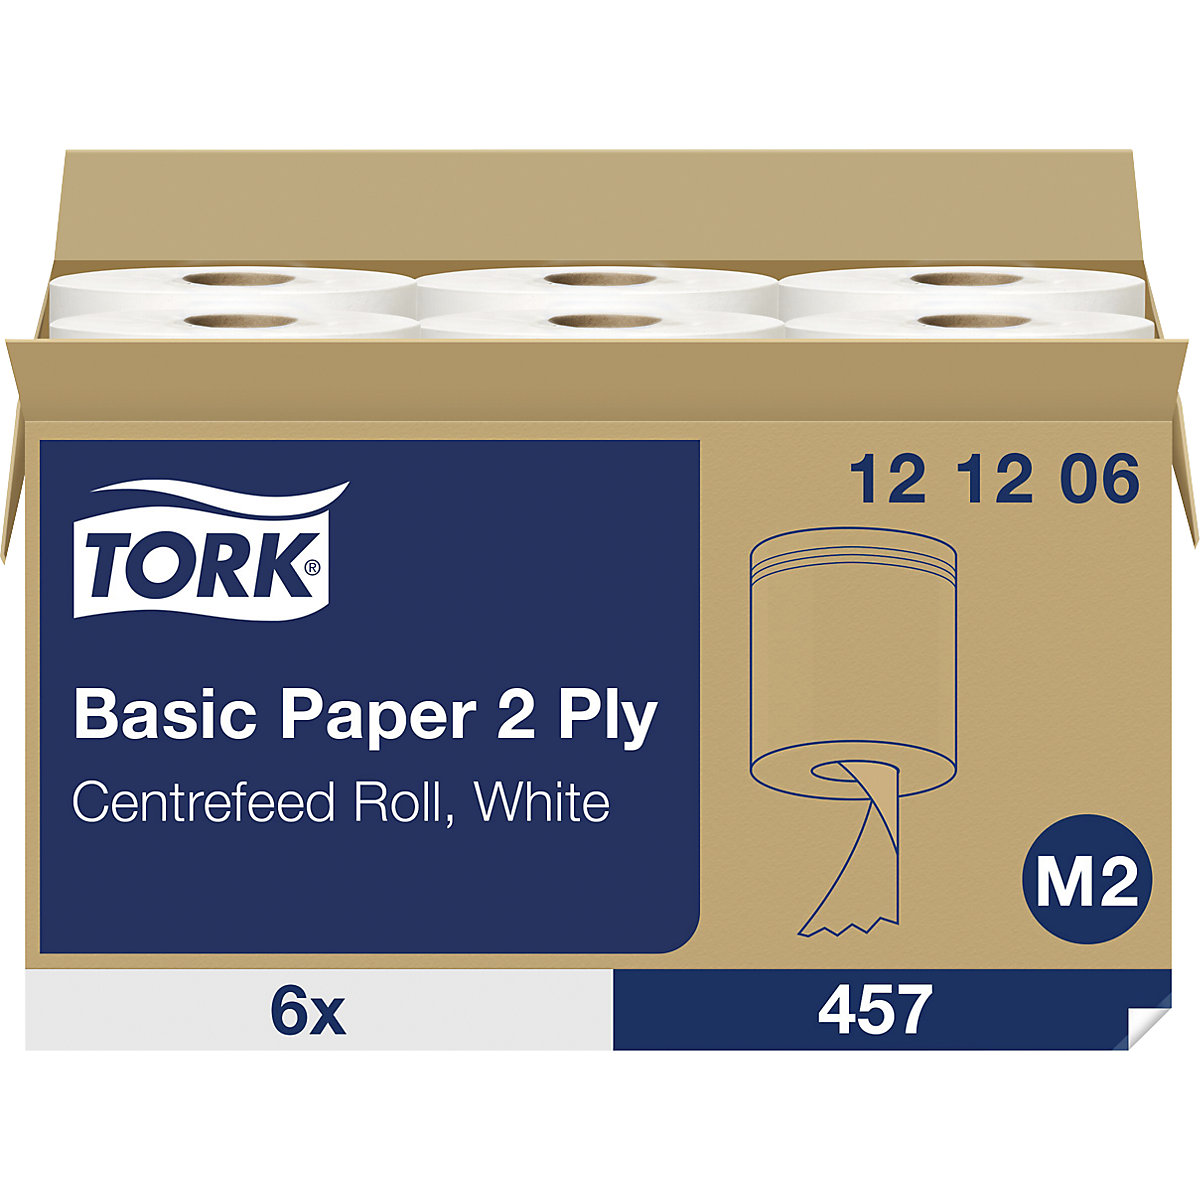 Standardne papirnate krpe, notranje odvijanje – TORK (Slika izdelka 3)-2